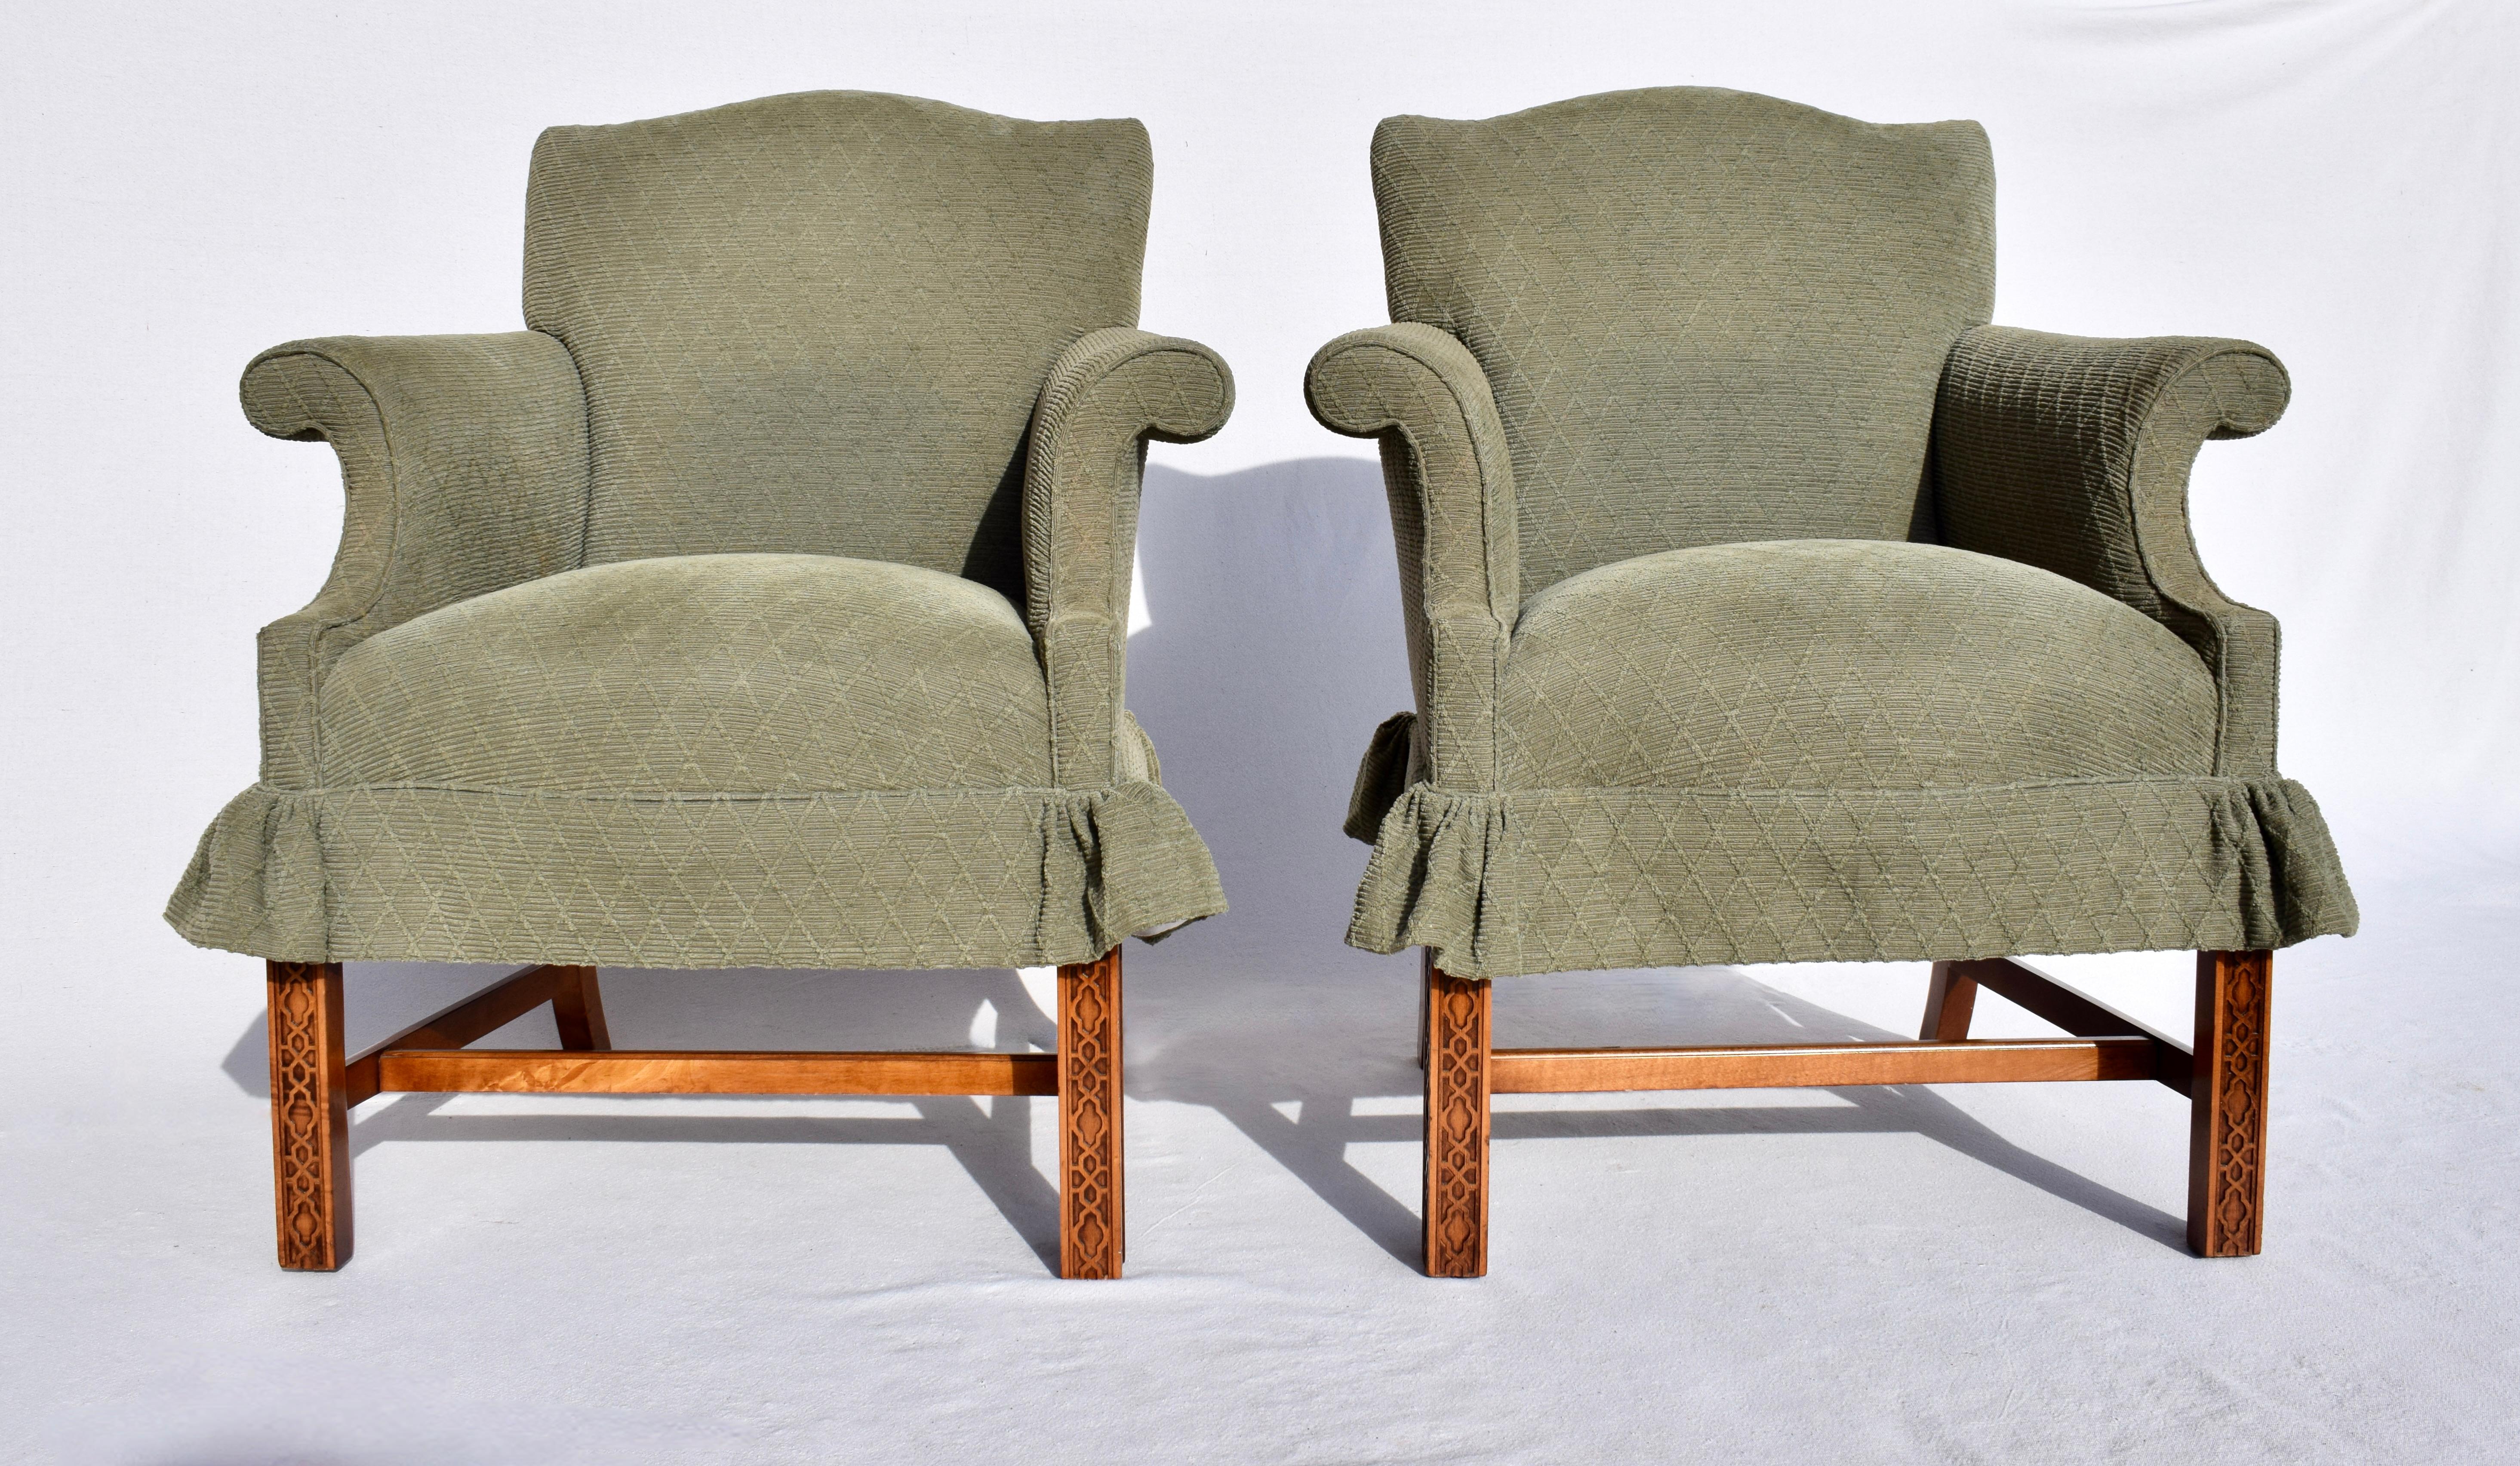 Ein Paar sehr süß George III Chippendale-Stil Sessel in Sage grün strukturierte Diamanten Chenille Polsterung mit chinesischen Chippendale Laubsägearbeiten auf die Mahagoni Basen mit H-Stretchern. Wiegender Komfort; Erbstückqualität.  Gemütliche